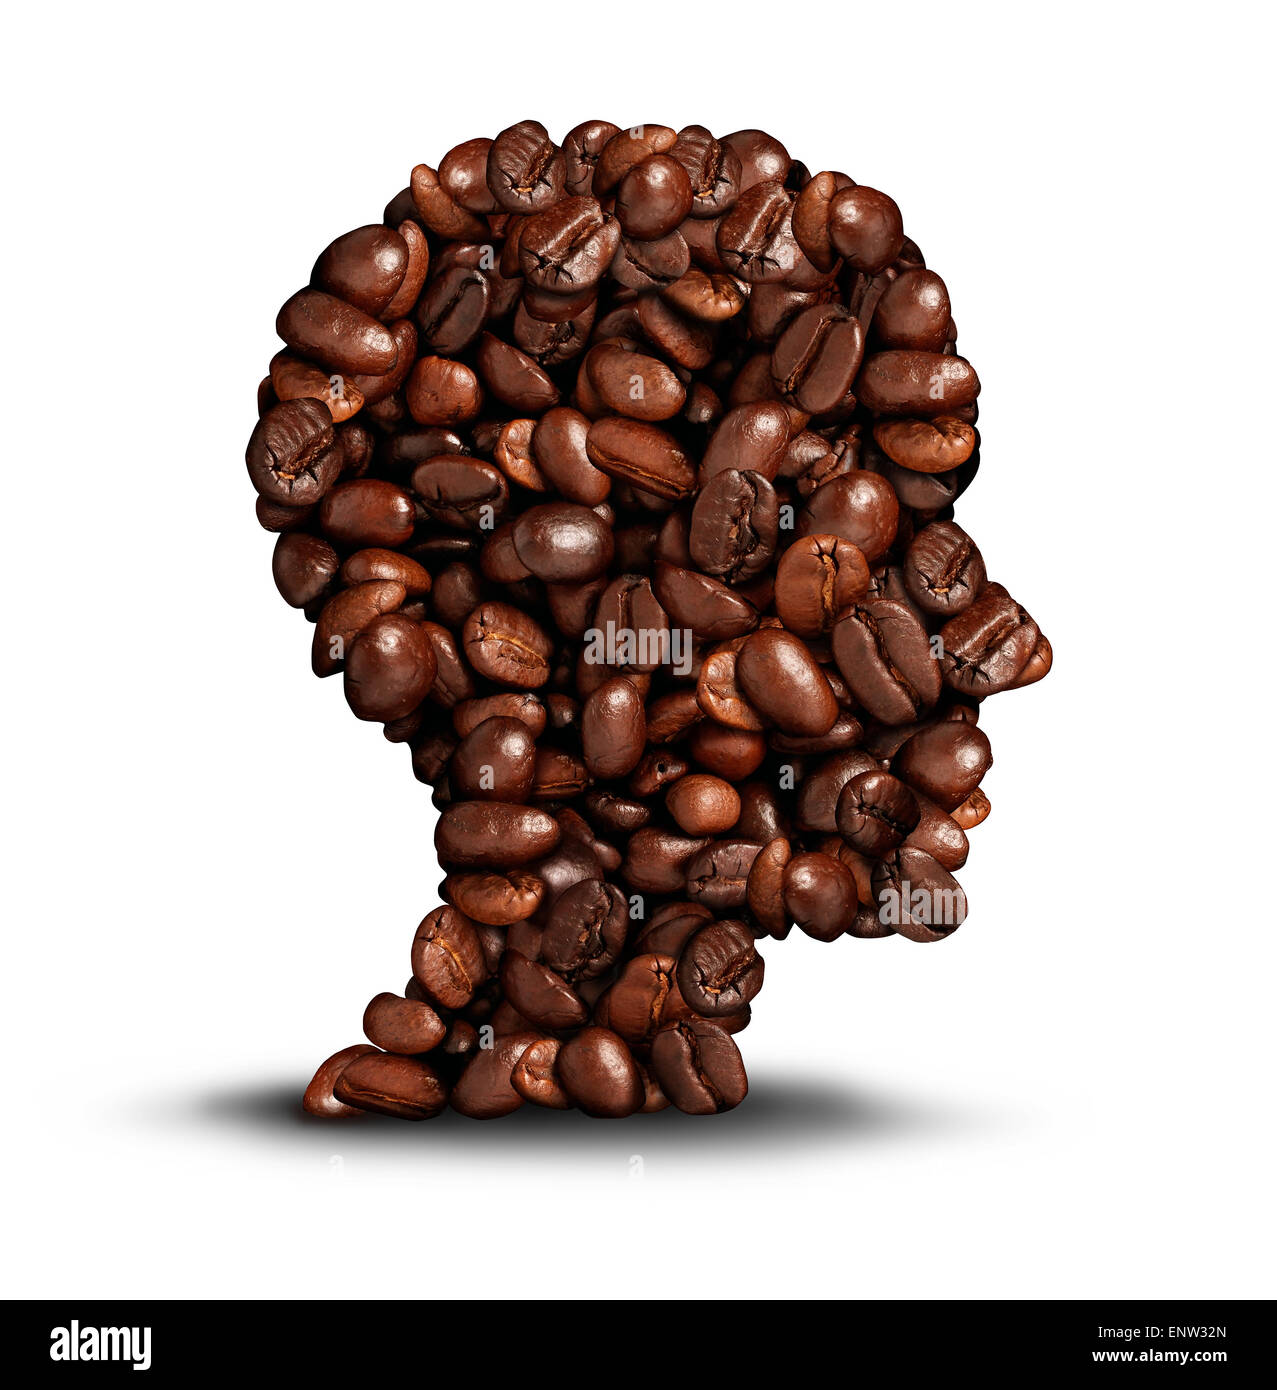 Kaffee Kopf Konzept als Symbol für ein Barista oder einem Café Symbol Person als eine Gruppe von gerösteten Bohnen in Form eines menschlichen Kopfes auf einem weißen Hintergrund. Stockfoto